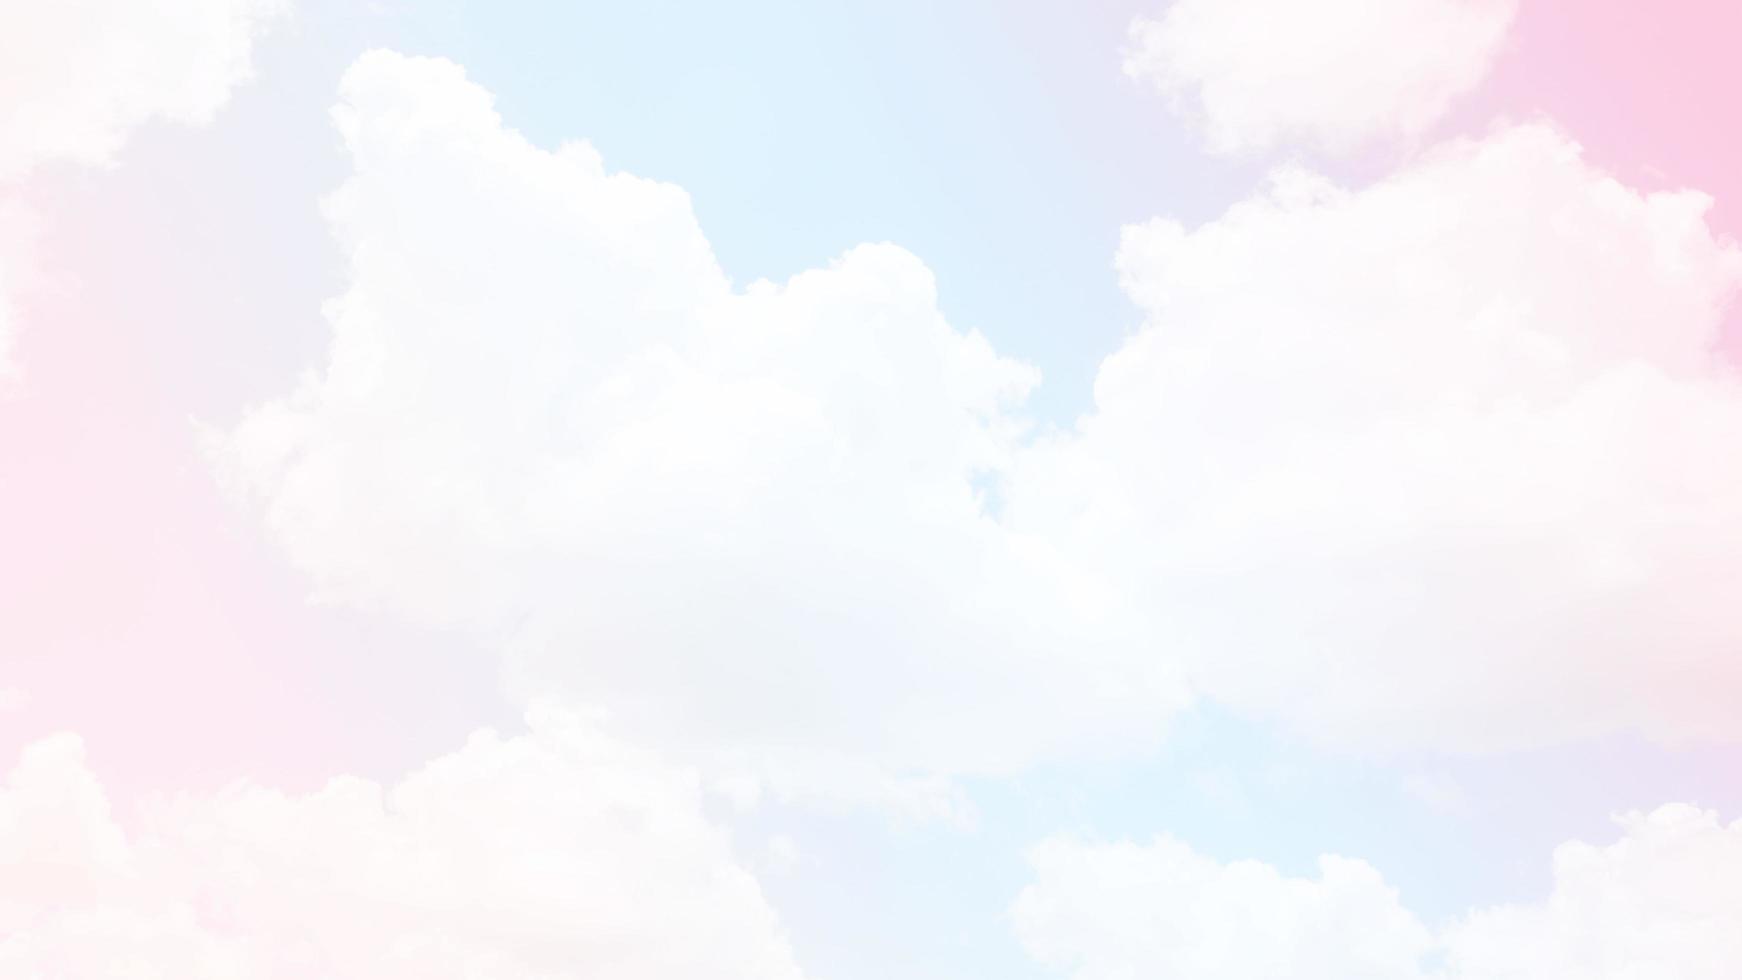 lucht en wolken op een mooie pastelkleurige achtergrond. abstracte zoete dromerige gekleurde hemelachtergrond foto